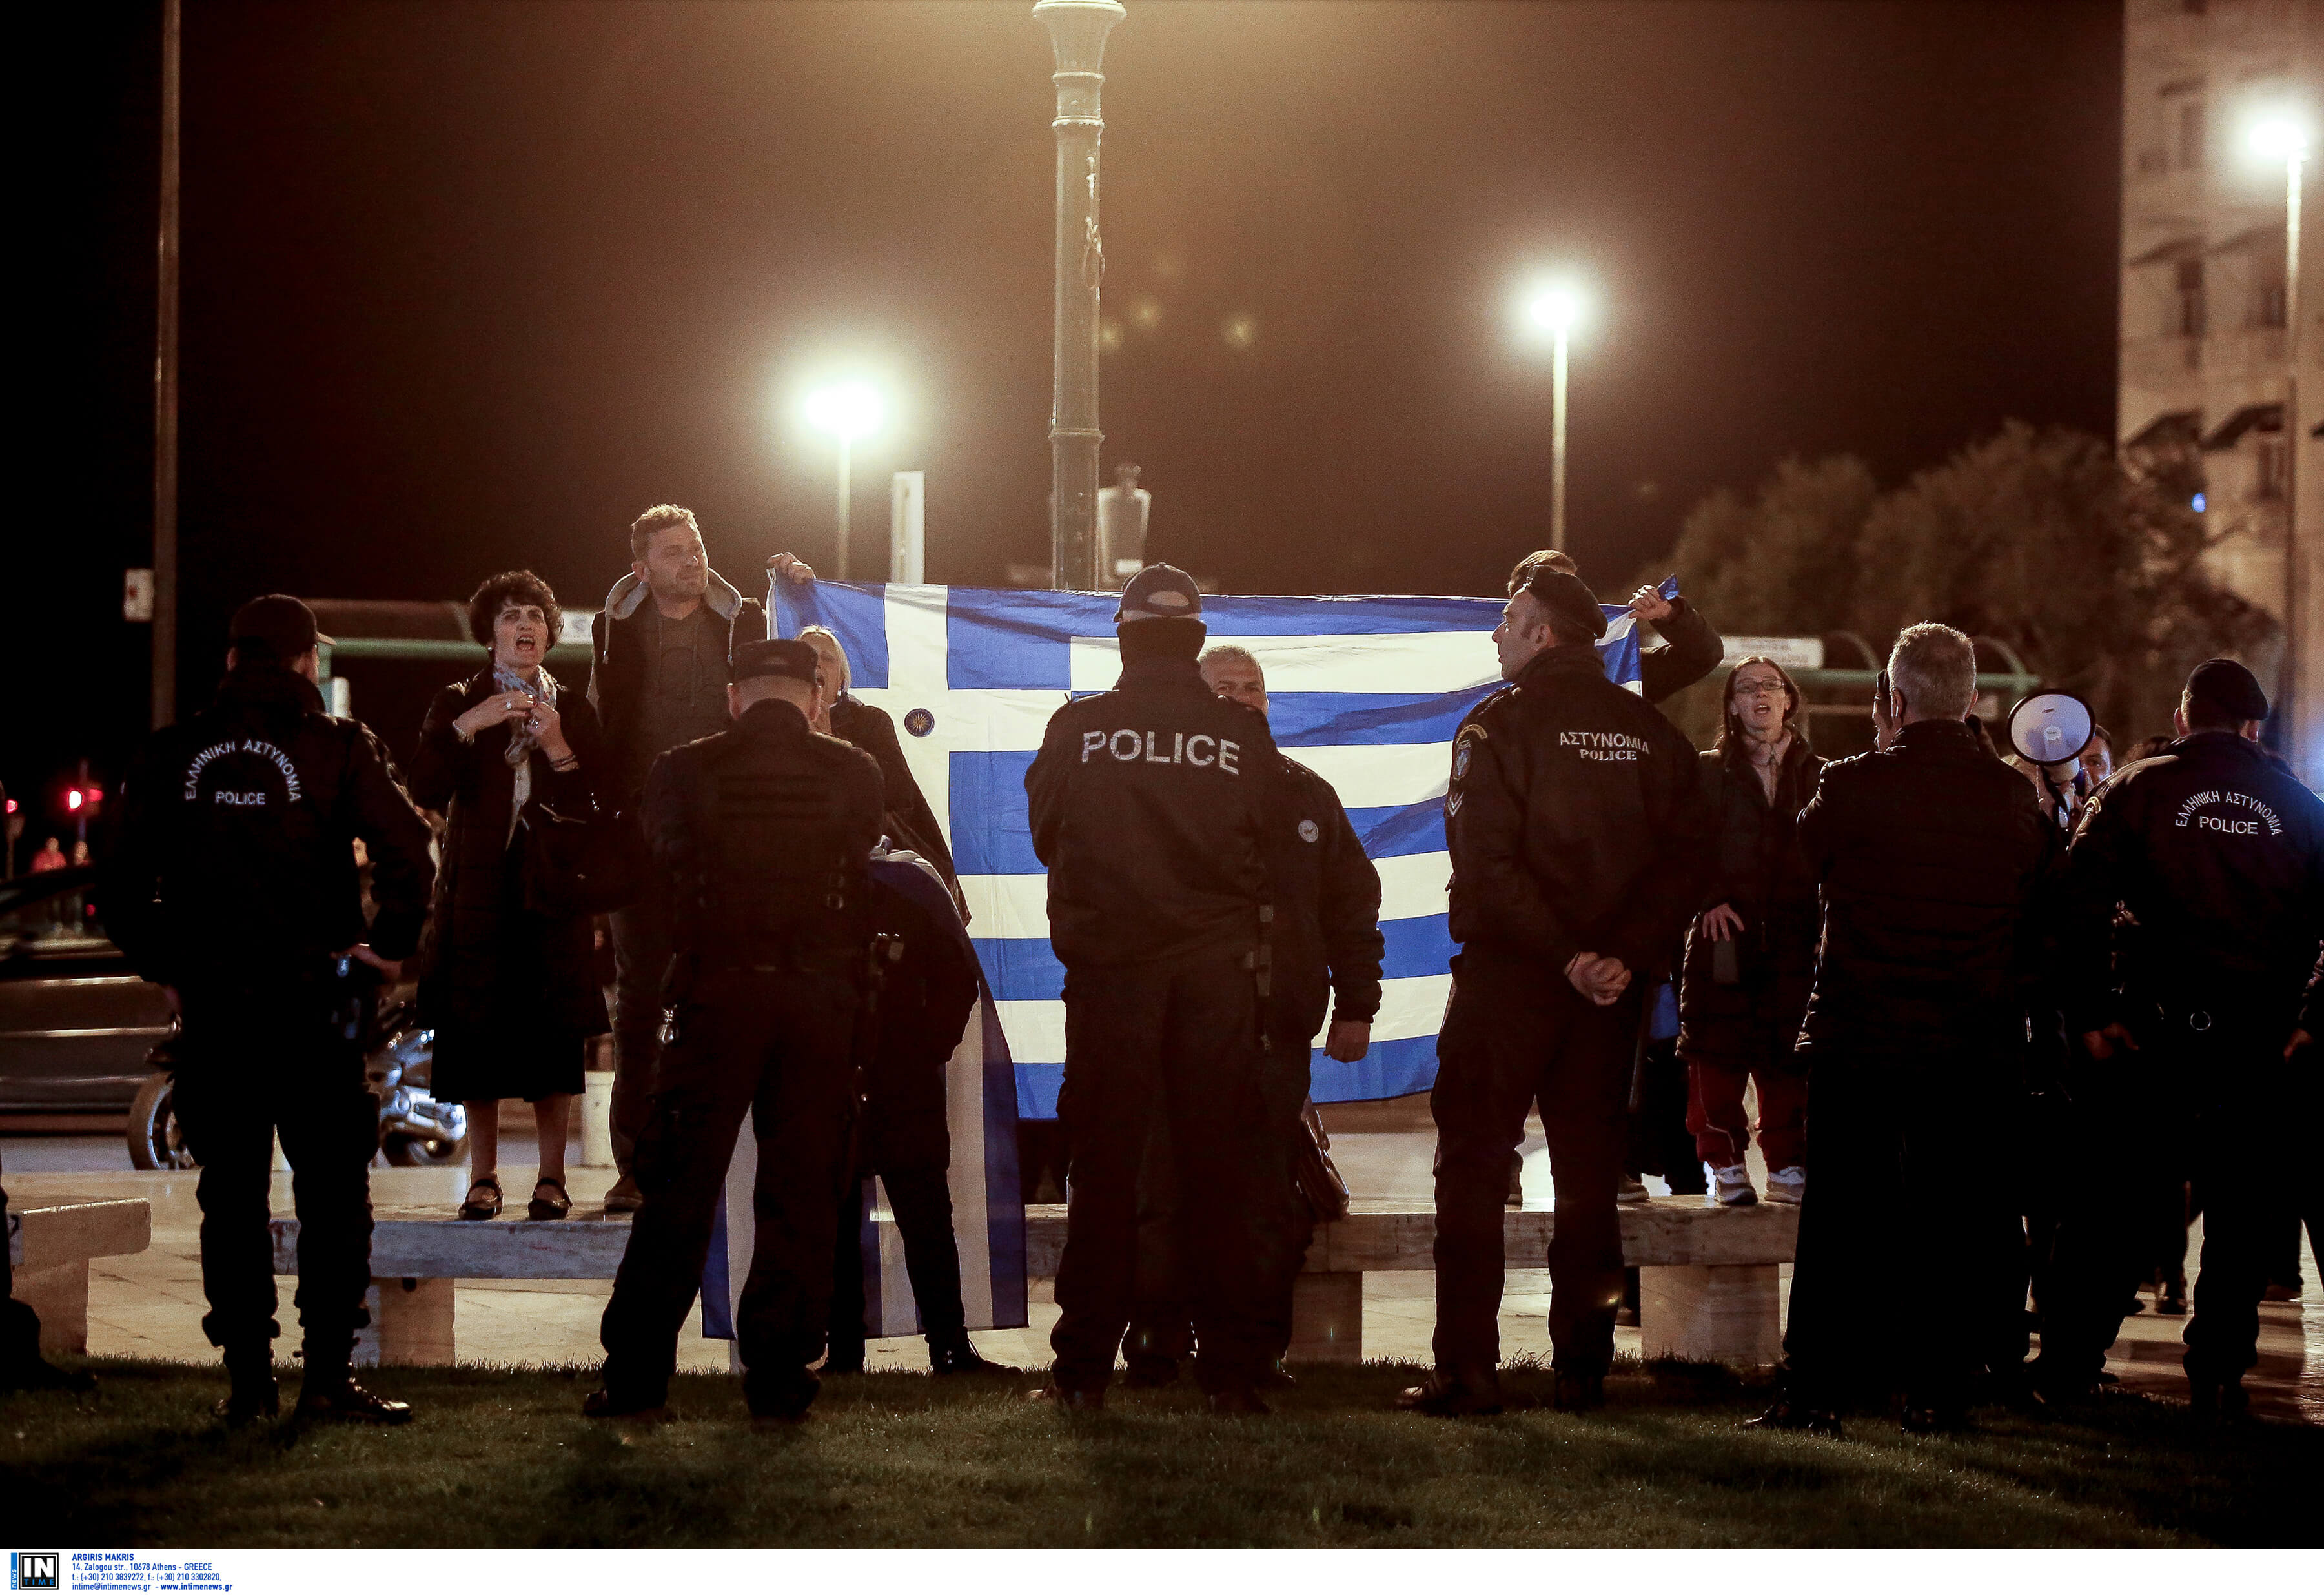 Θεσσαλονίκη: Ο Τσακαλώτος απάντησε με δυο φωτογραφίες για τις αποδοκιμασίες – Νέες εικόνες με οργισμένους διαδηλωτές – video